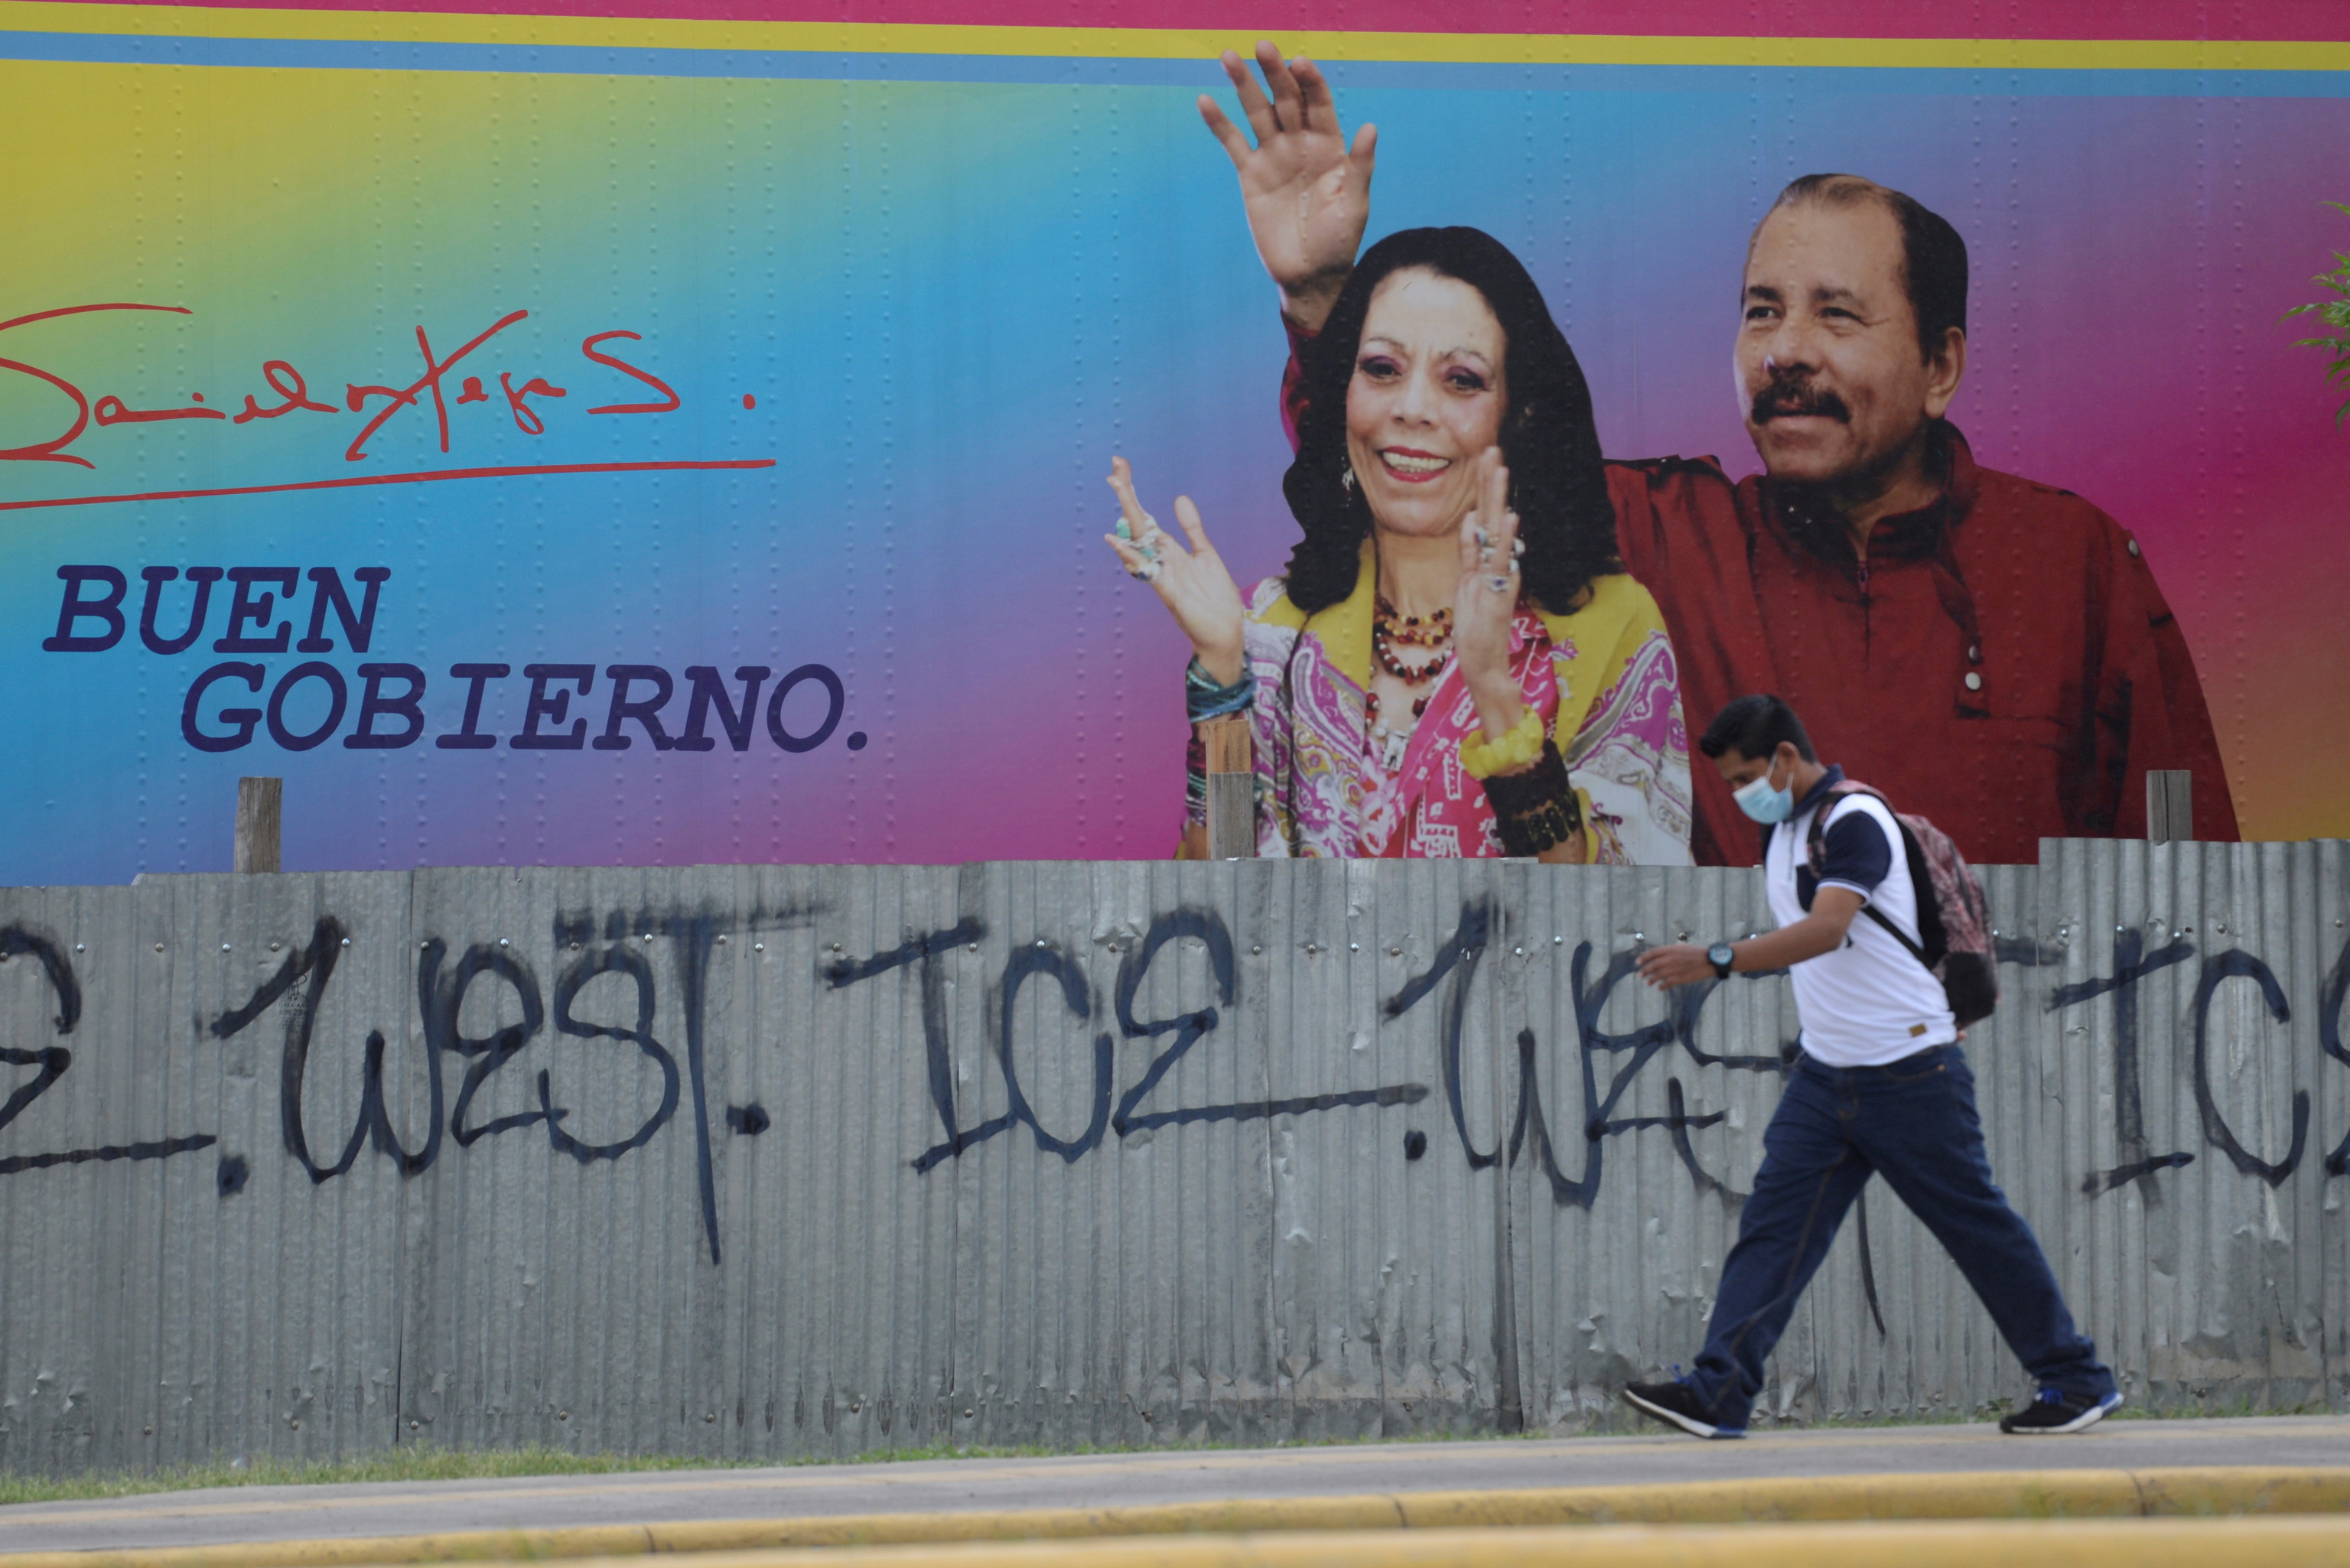 El presidente Daniel Ortega, junto a su mujer Rosario Murillo, en un cartel electoral.